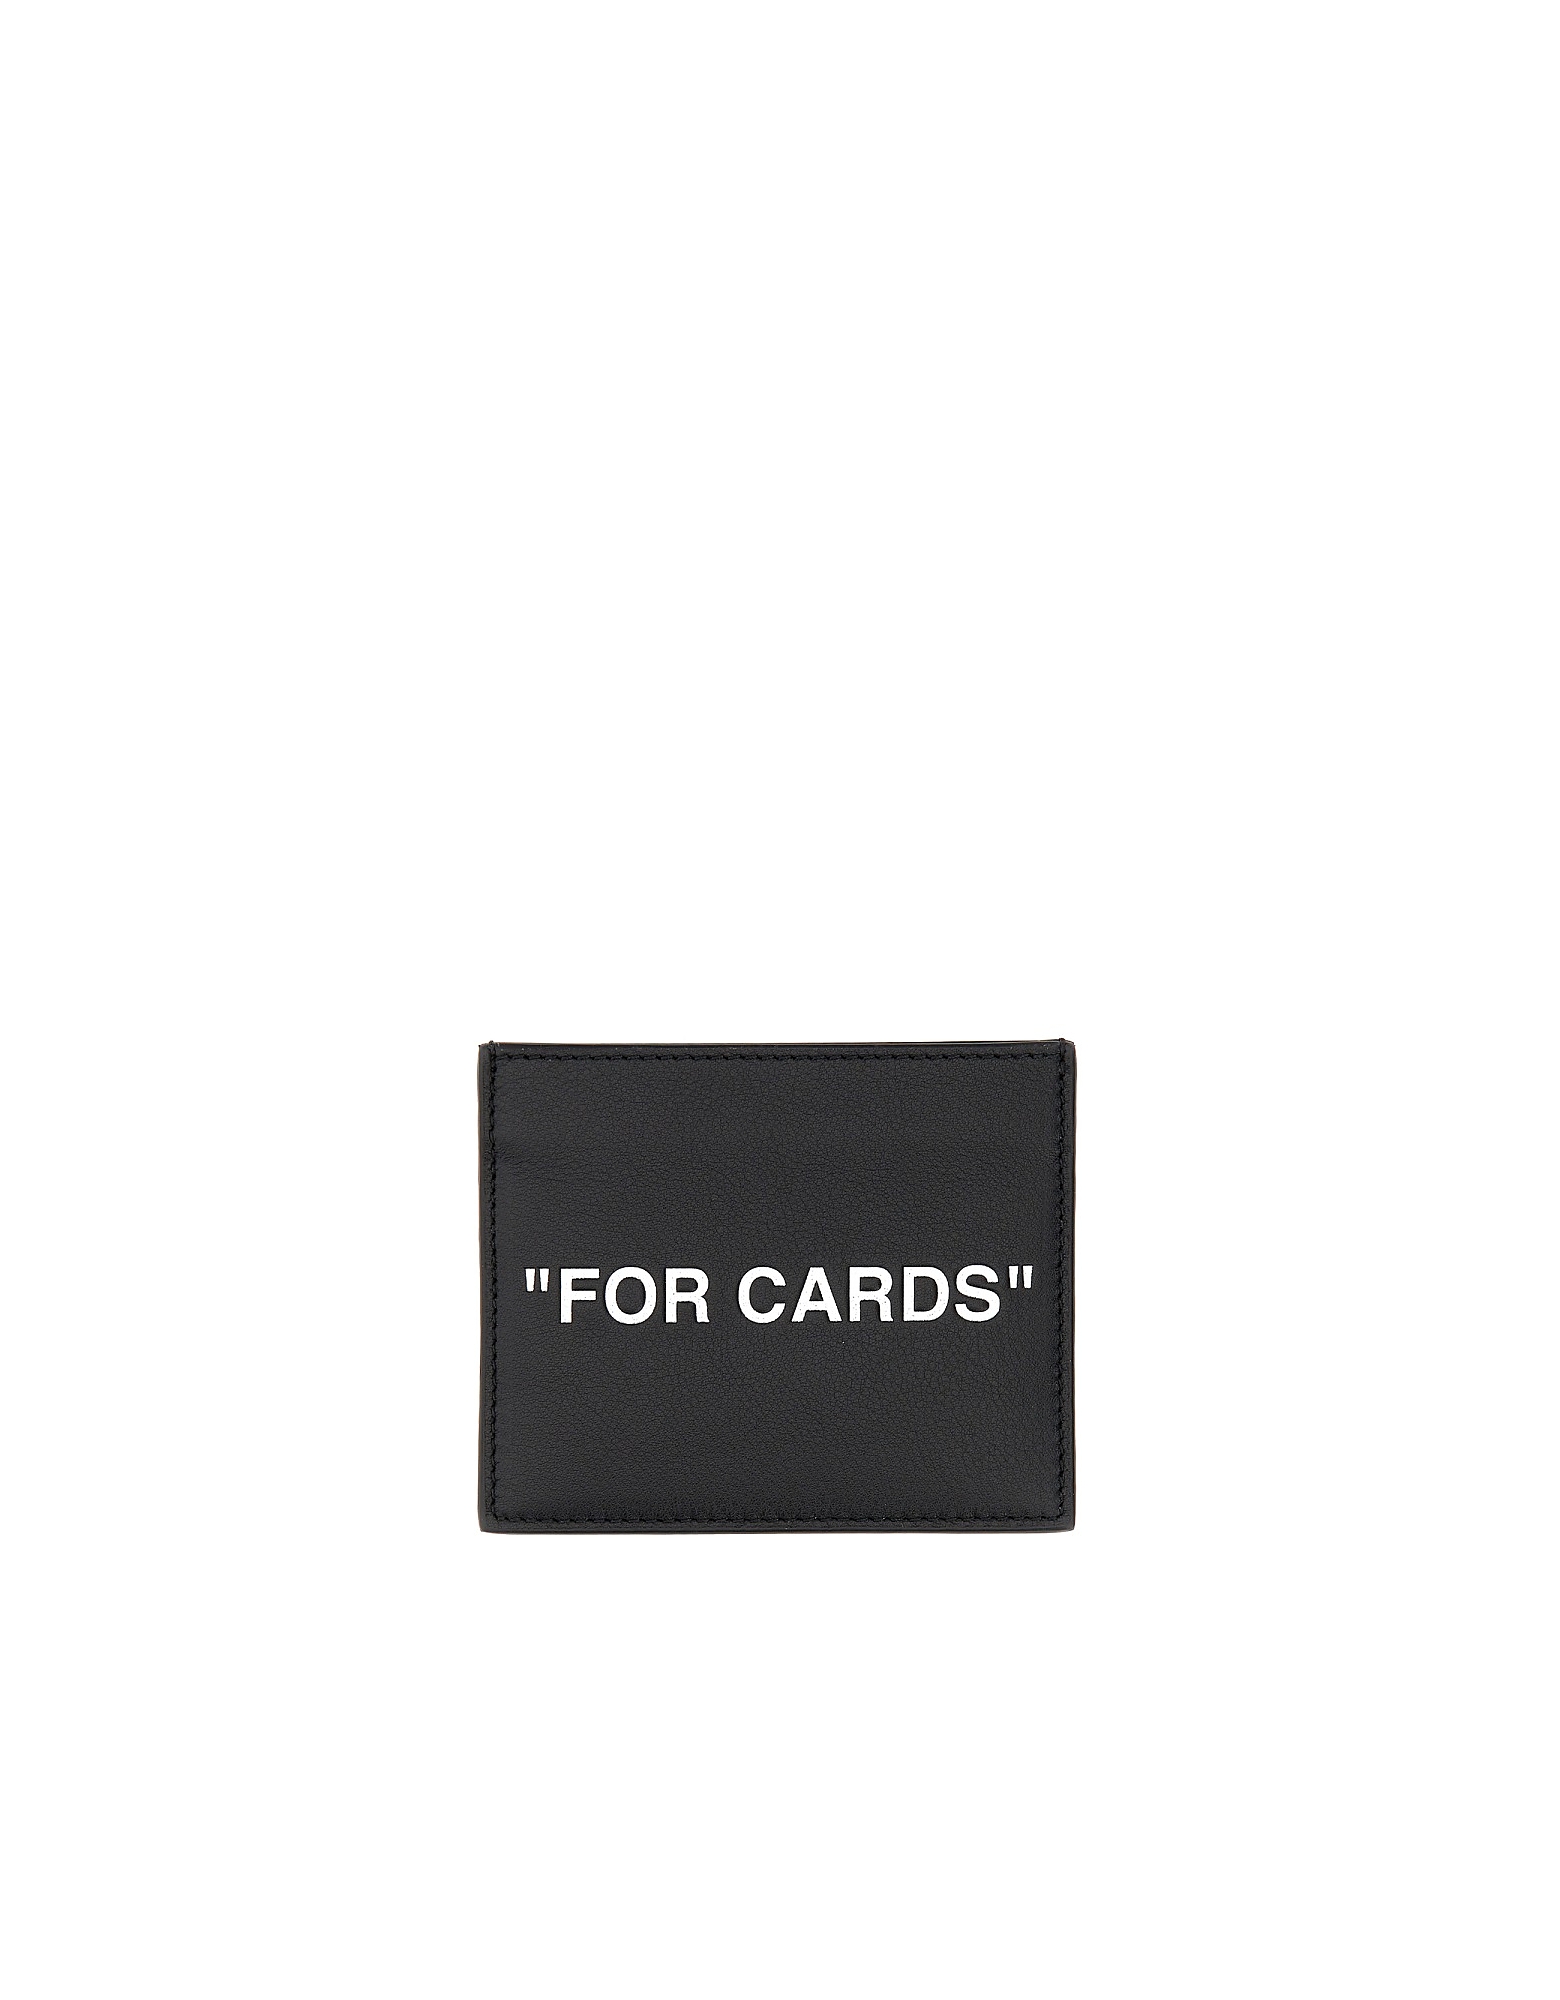 OFF-WHITE DESIGNER MEN'S BAGS CARD HOLDER FOR CARDS